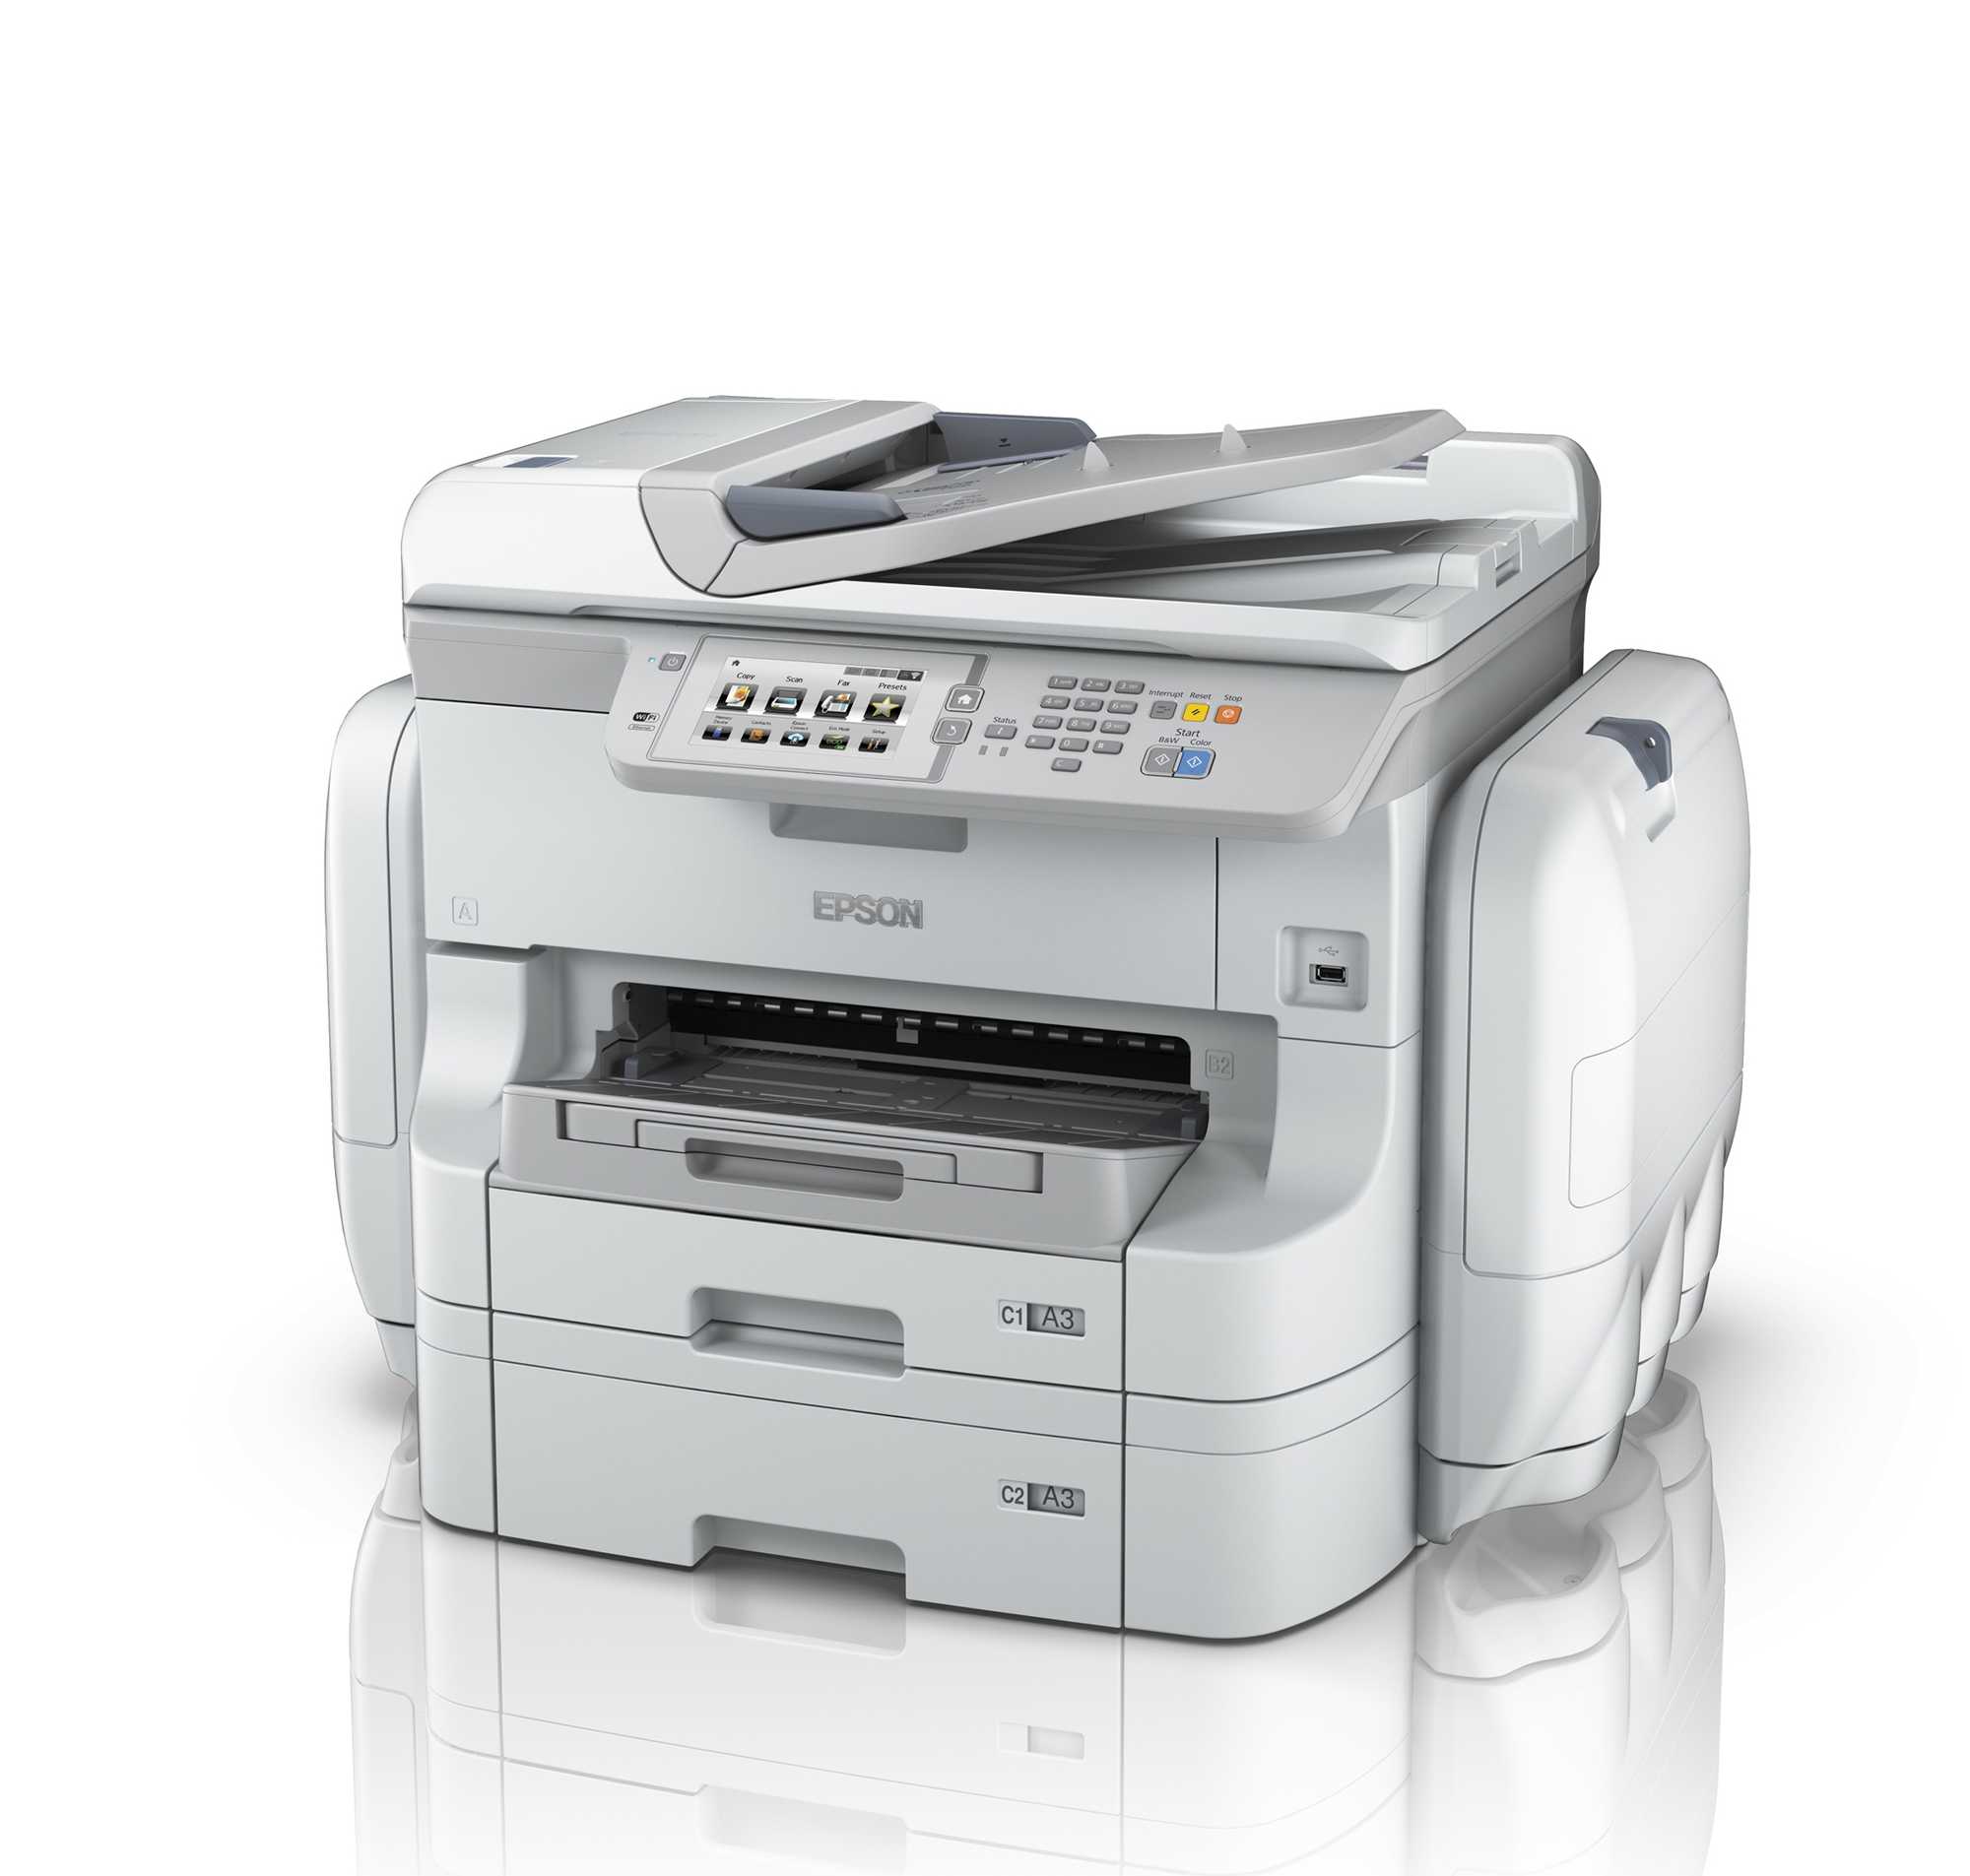 Epson stellt Produktion von Laserdruckern ein